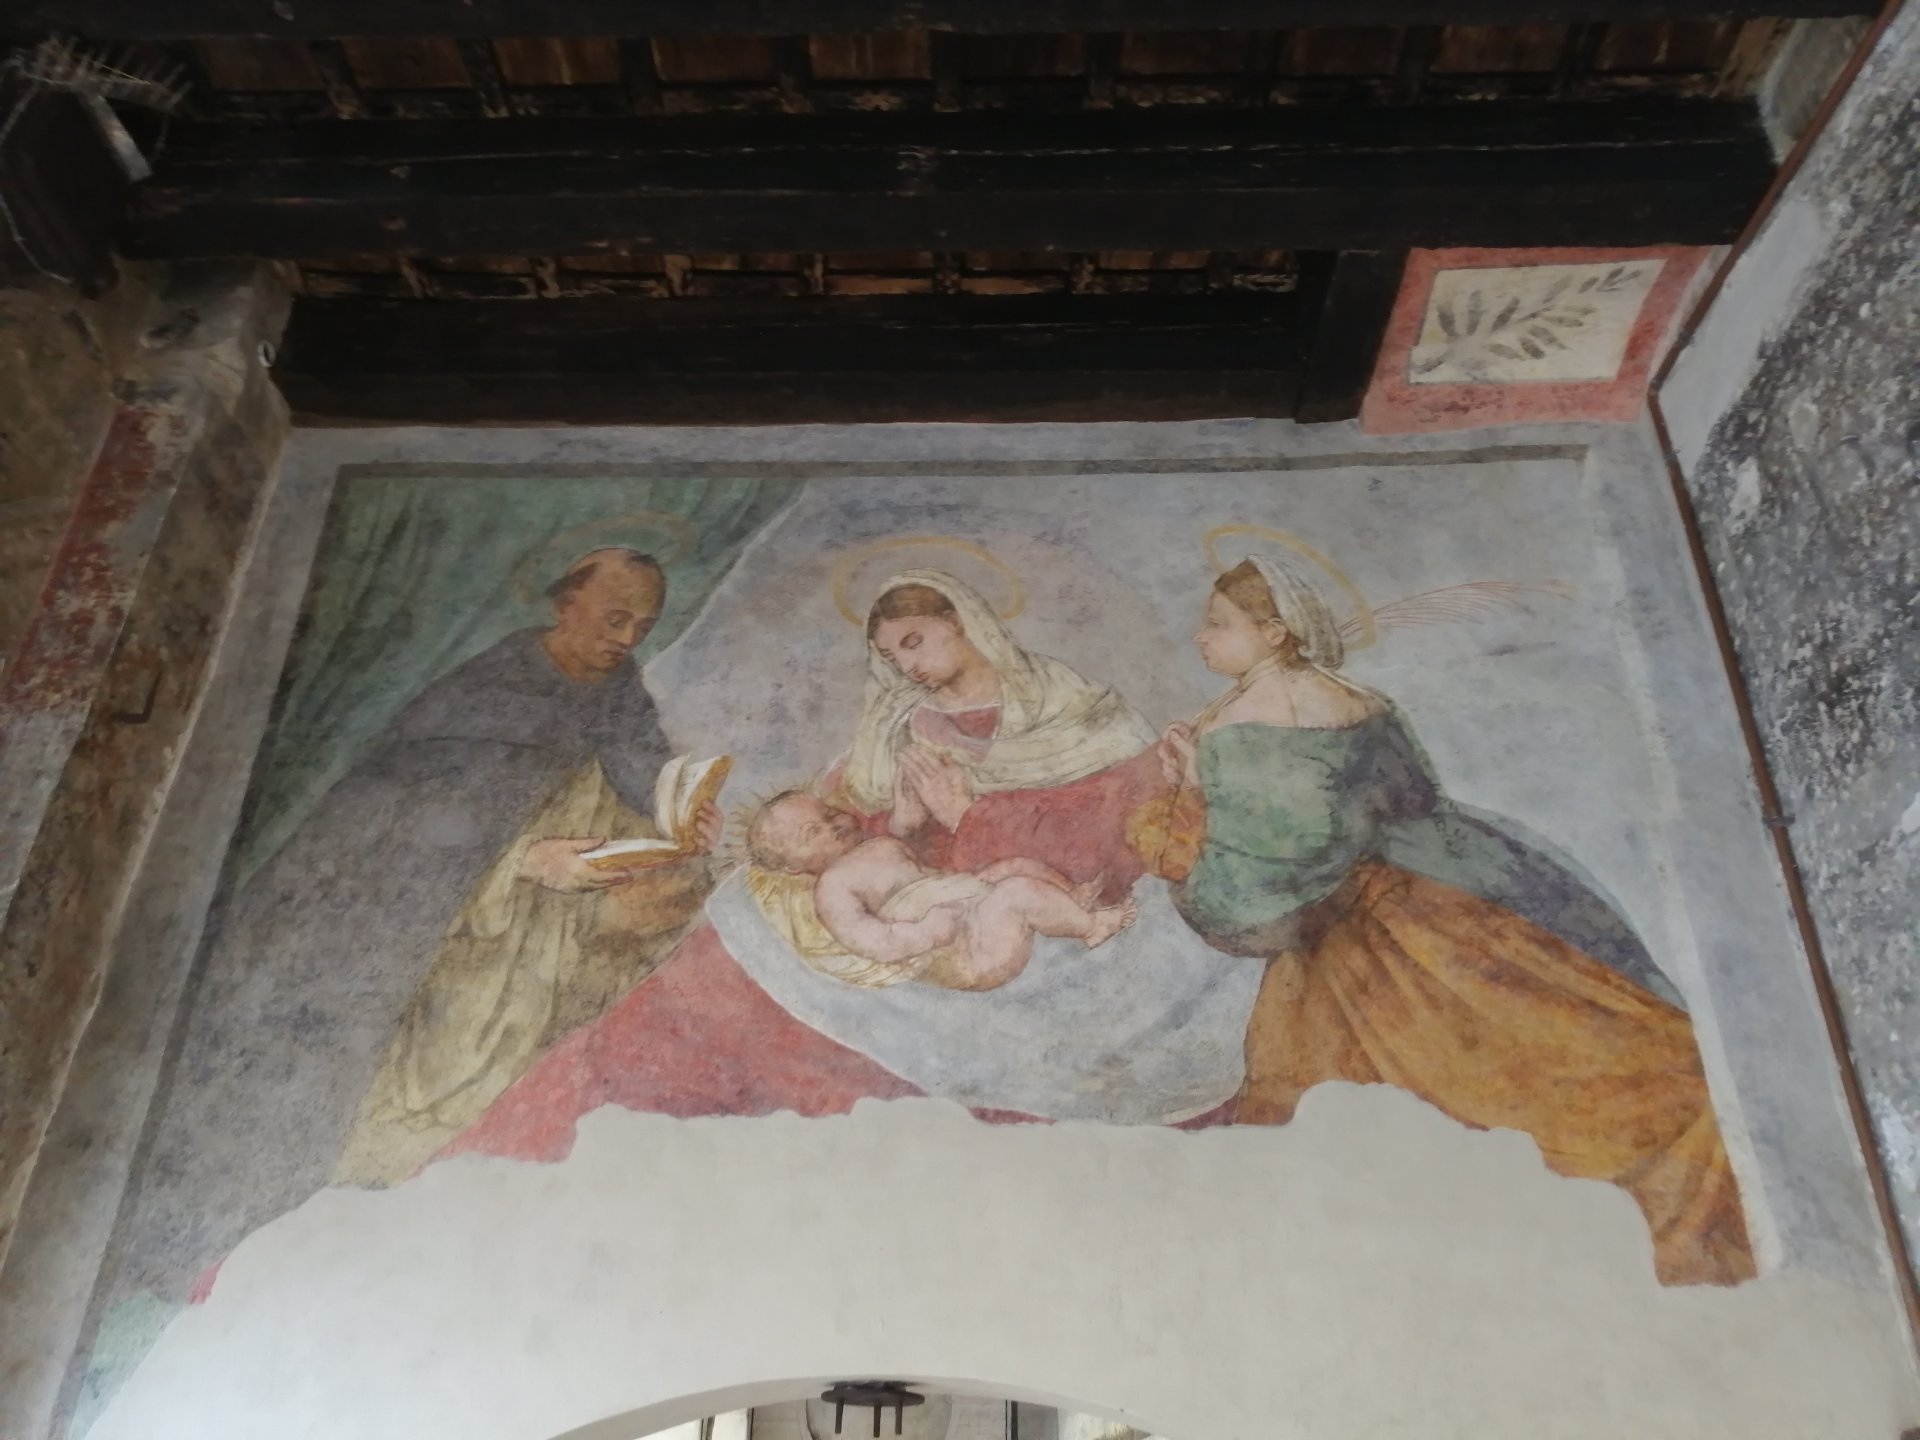 Restauro affresco a Treviso, alla fine scoperta opera della scuola di Tiziano - FOTO